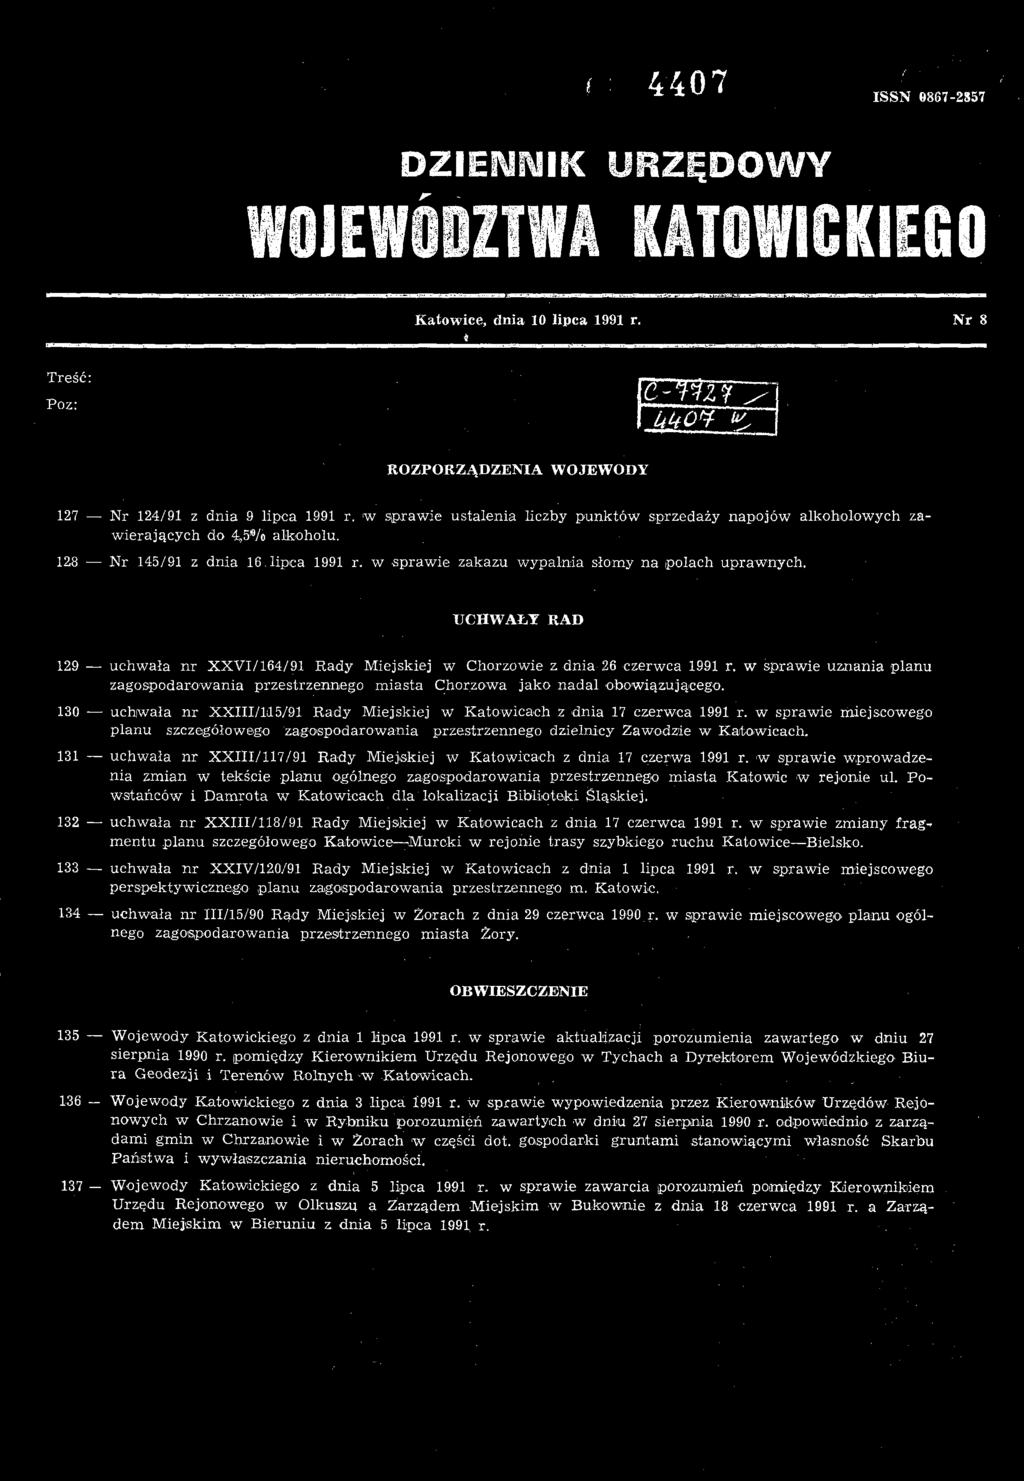 131 uchwała nr XXI1I/117/91 Rady Miejskiej w Katowicach z dnia 17 czerwa 1991 r. w sprawie wprowadzenia zmian w tekście planu ogólnego zagospodarowania przestrzennego miasta Katowic w rejonie ul.